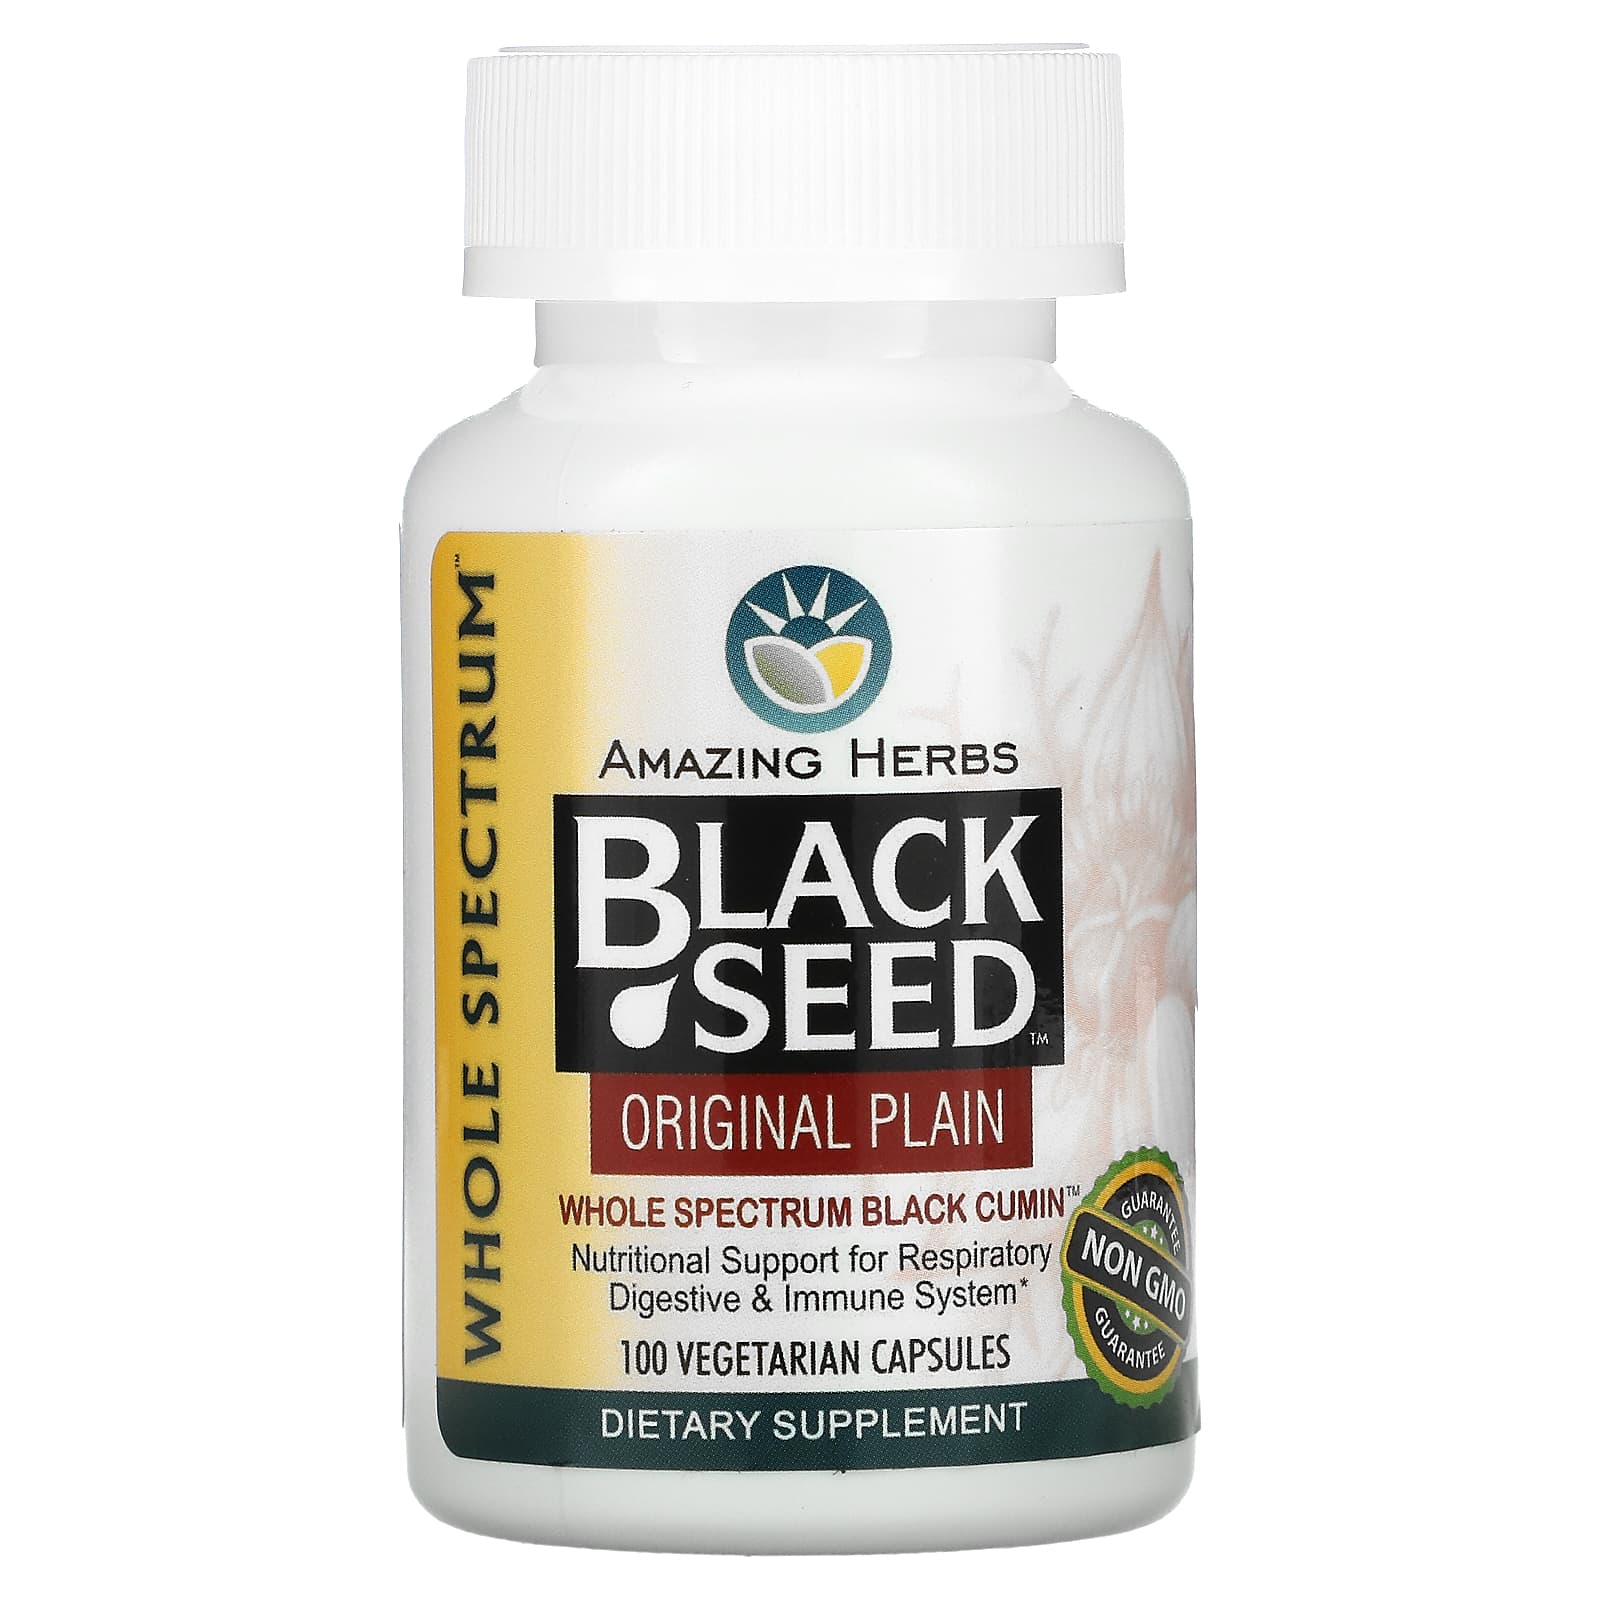 Amazing Herbs Черный тмин оригинальный чистый 100 вегетарианских капсул amazing herbs black seed original plain 100 вегетарианских капсул